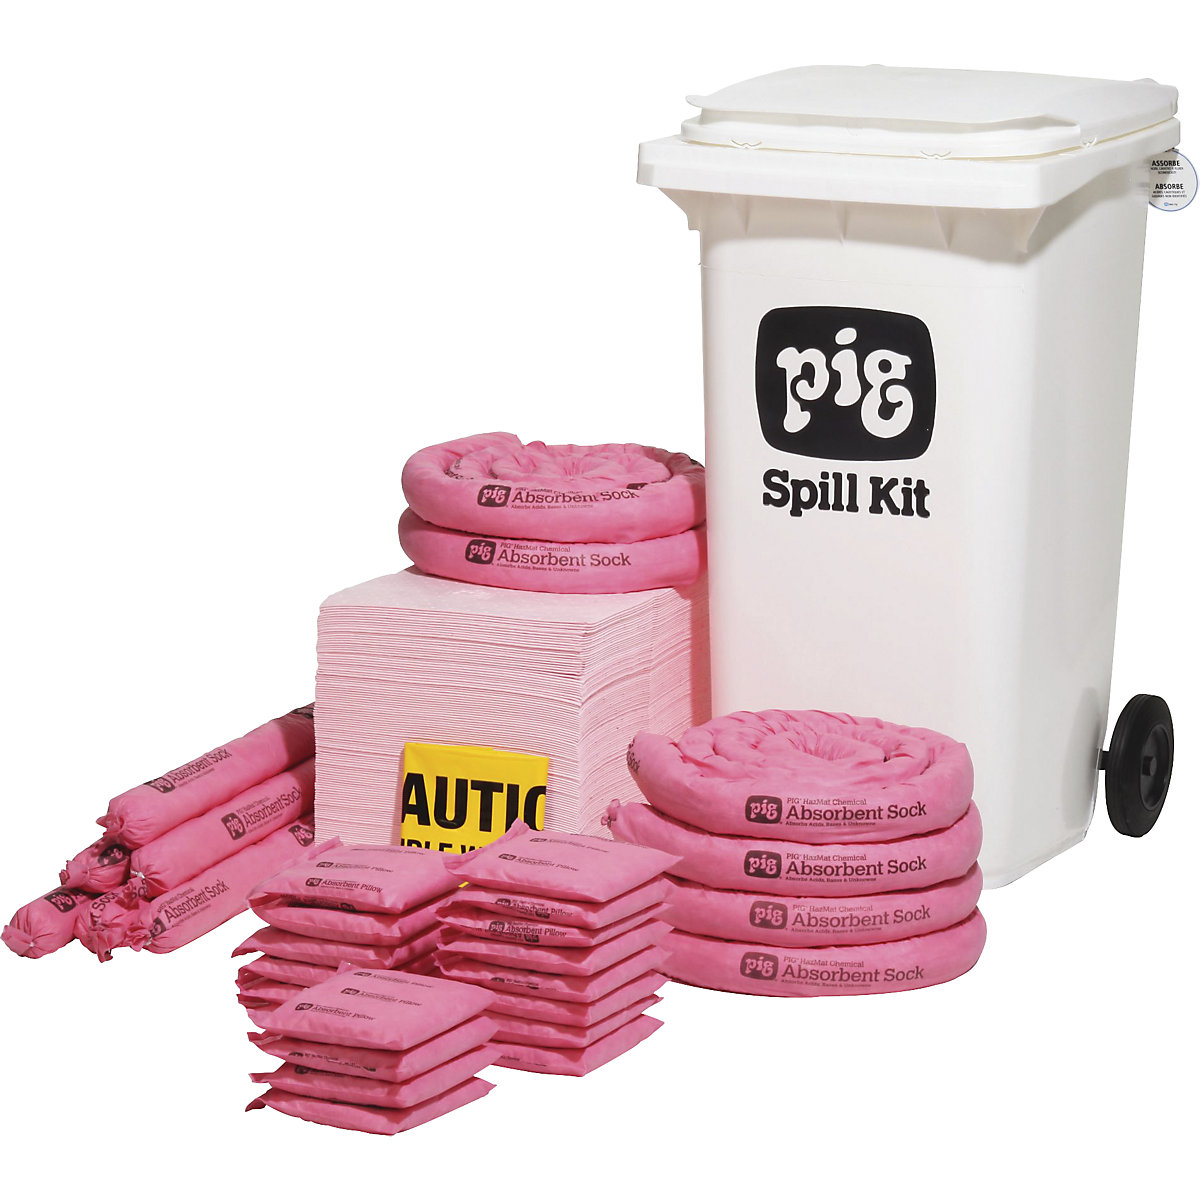 Mobiele kit voor noodgevallen, middelgroot - PIG